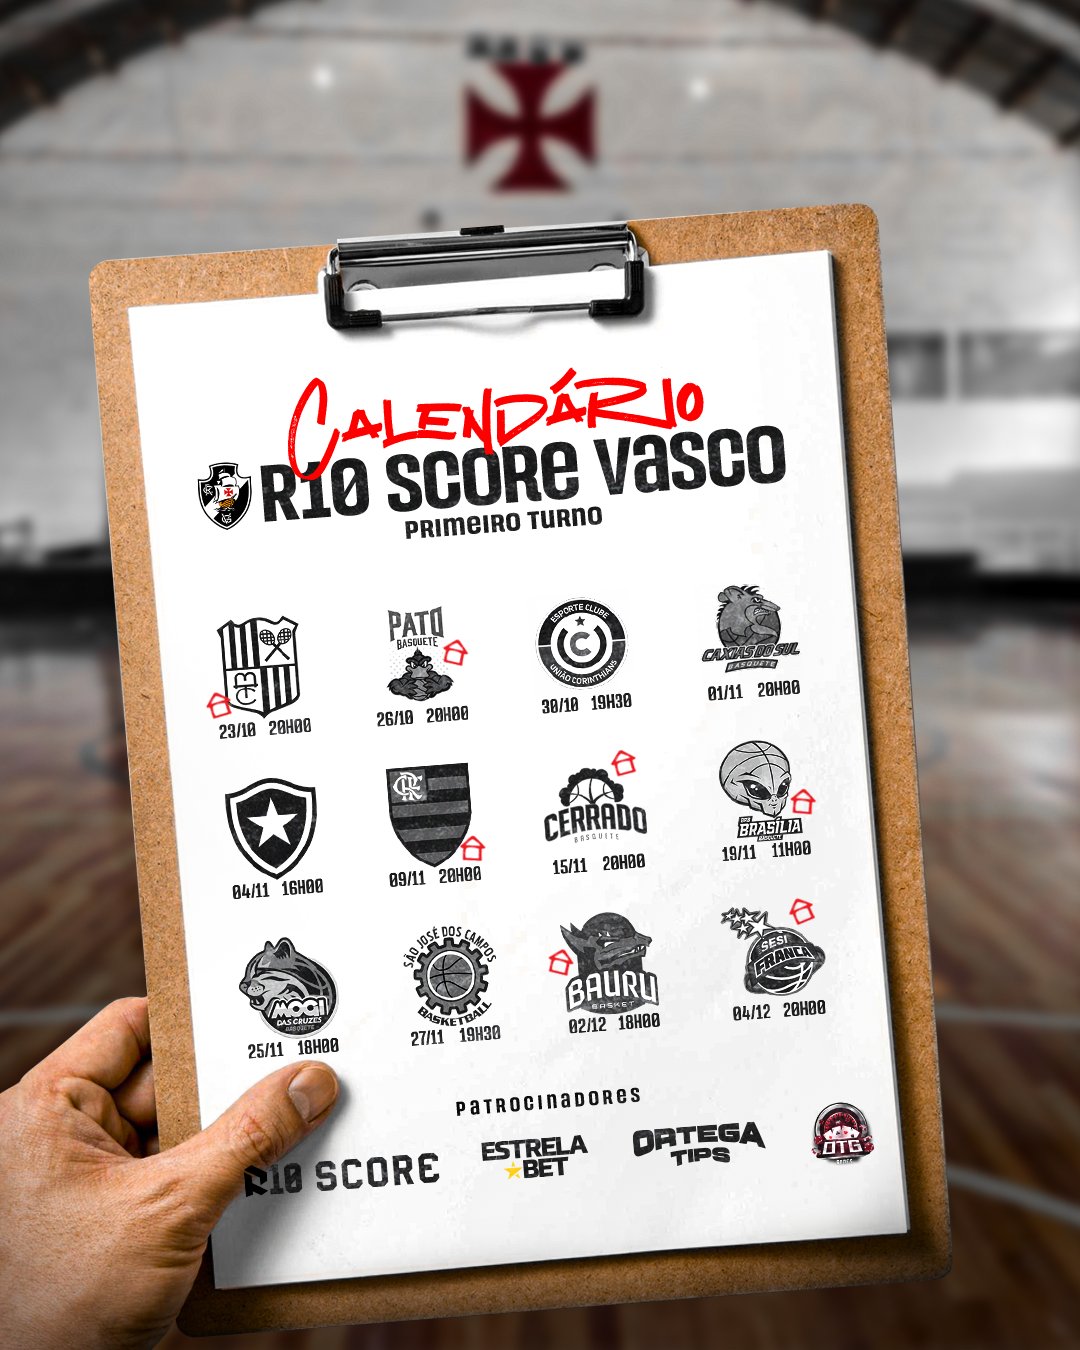 R10 Score Vasco da Gama on X: ESTÁ CHEGANDO A HORA!💢🏀 O R10